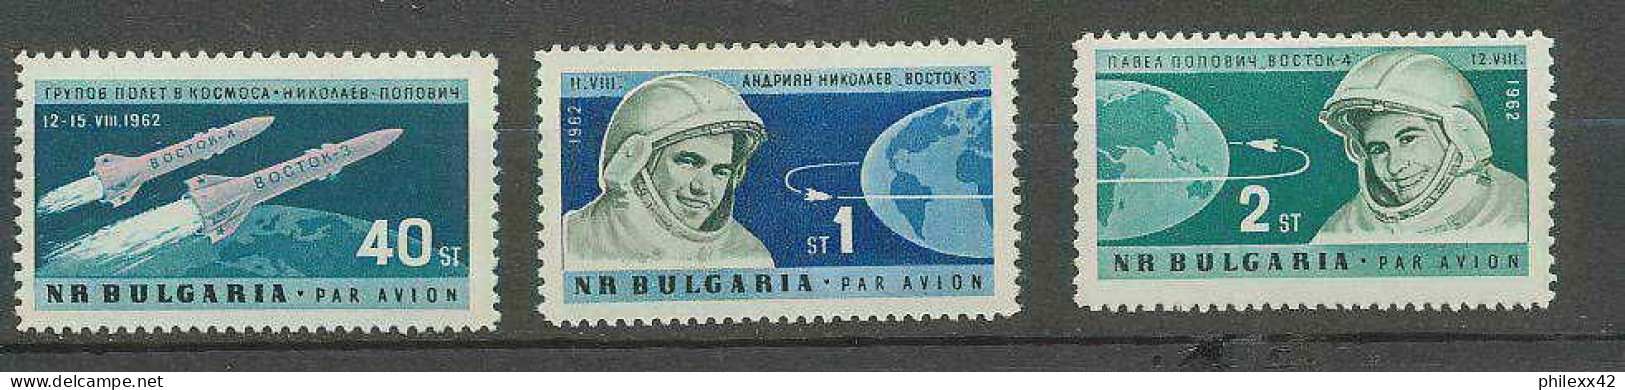 2216/ Espace (space) Neuf ** MNH Bulgarie (Bulgaria) 94/95 Vostok  - Europa